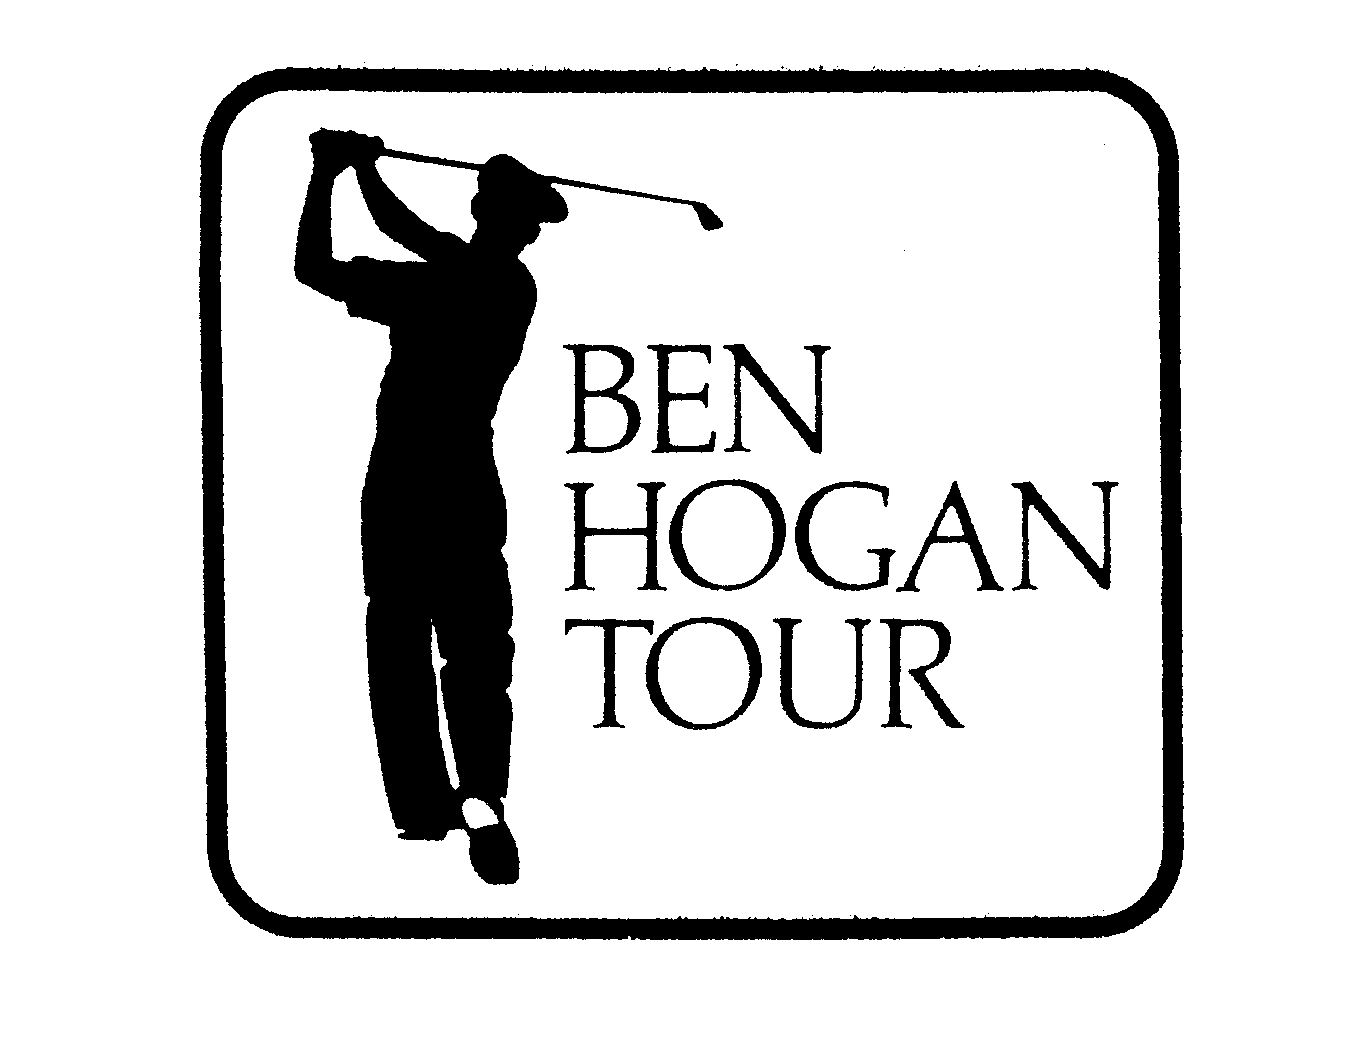  BEN HOGAN TOUR